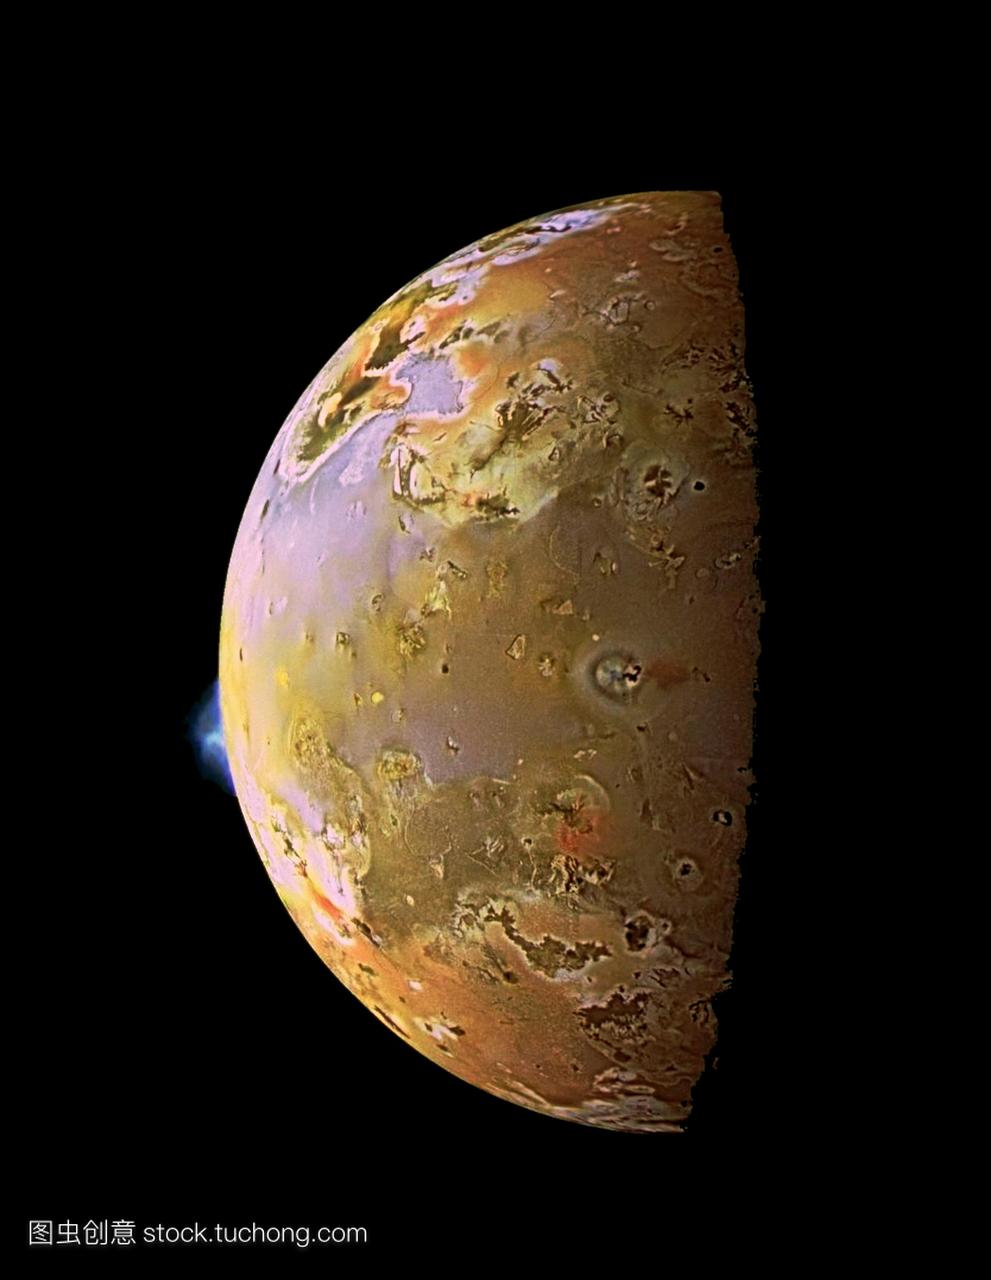 伽利略飞船的形象两个火山喷发Io木星的一个卫